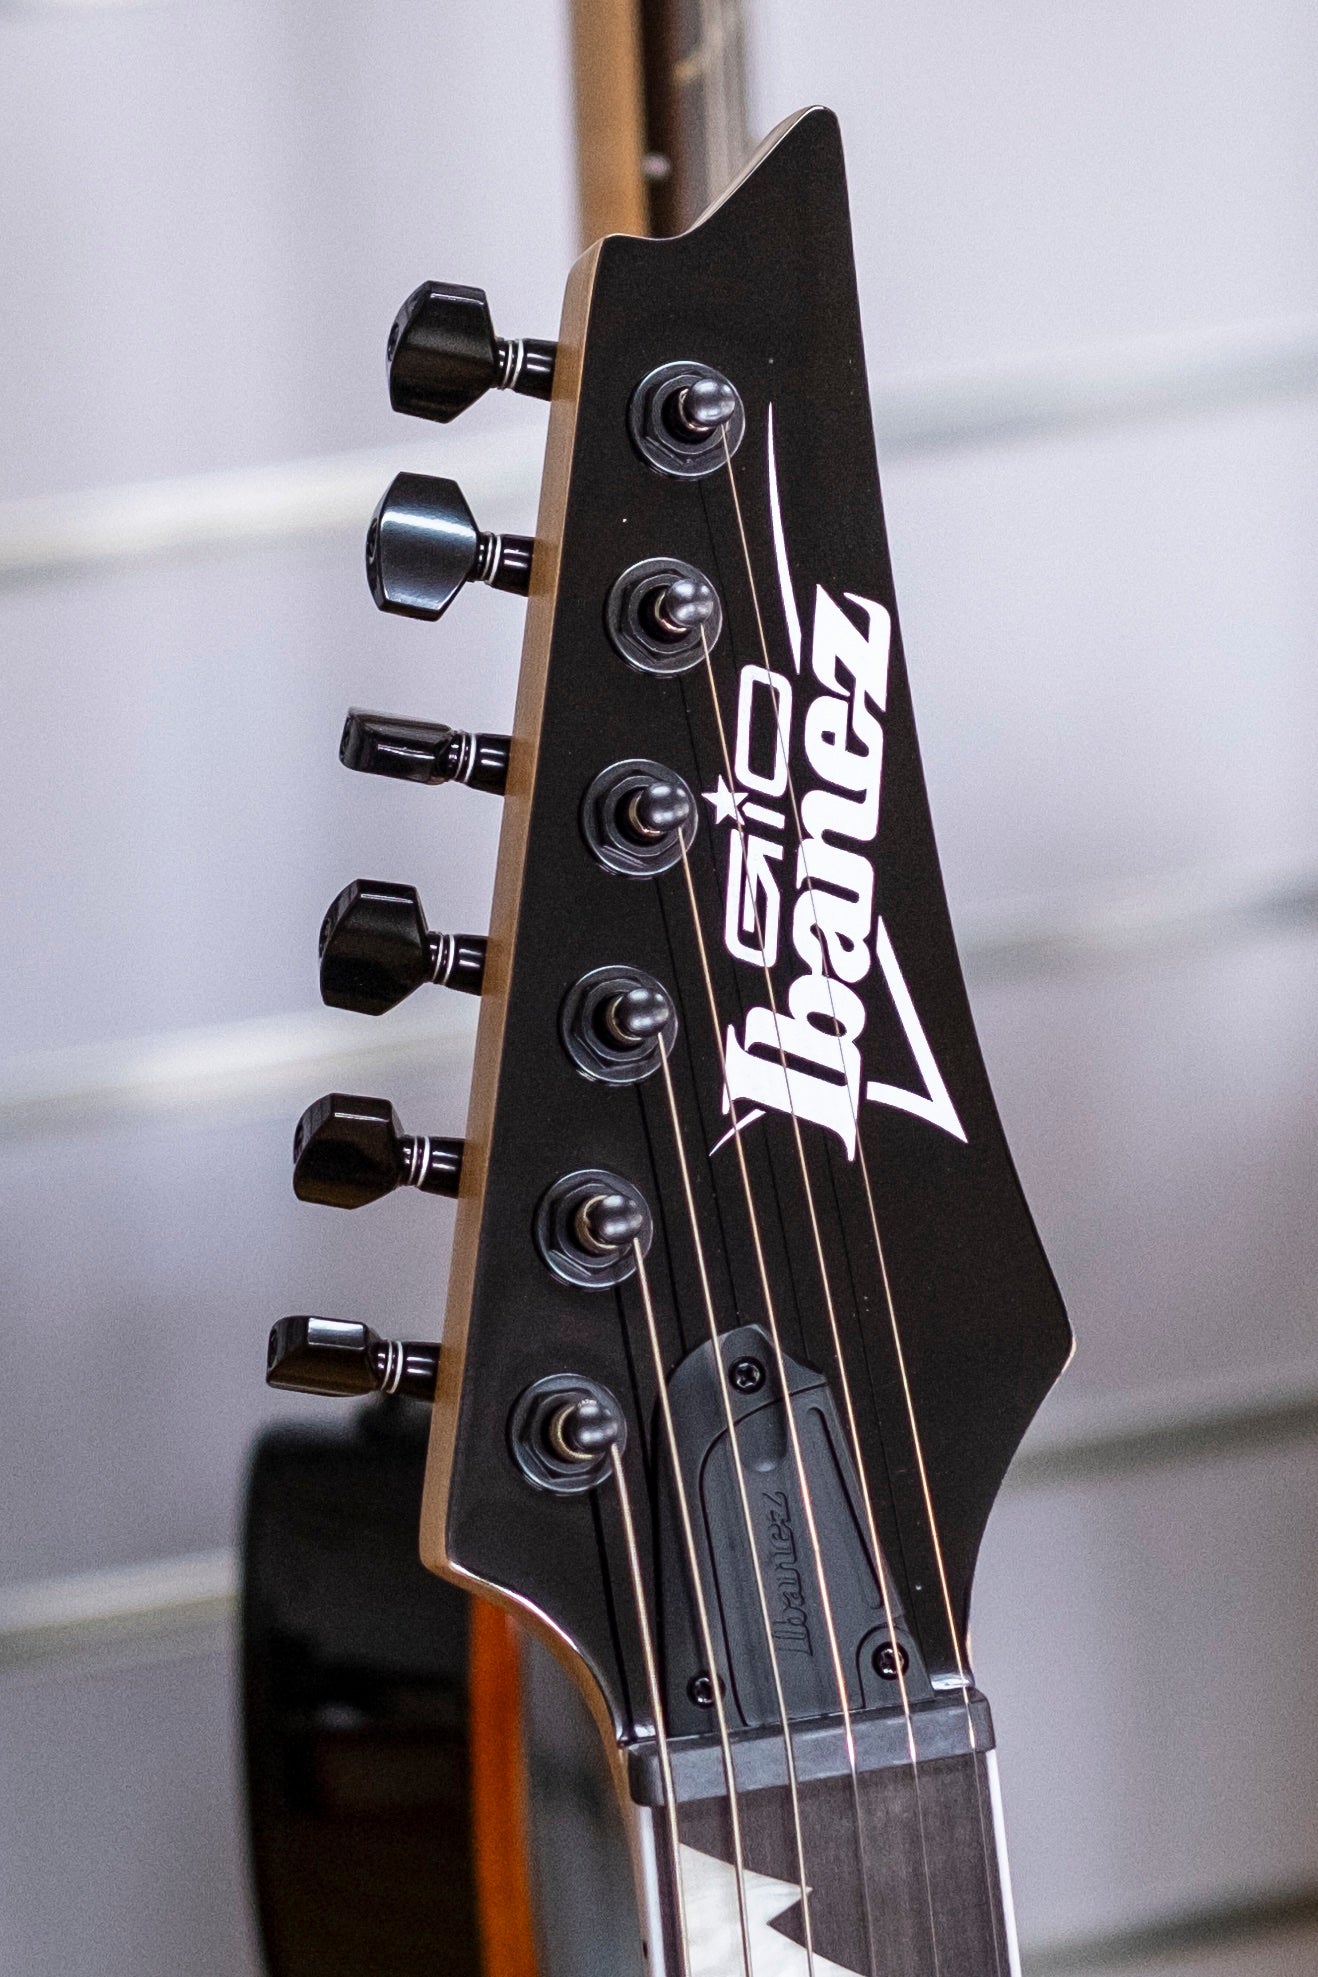 Ibanez Gio Series RG121DX Electric Guitar (Walnut Flat)